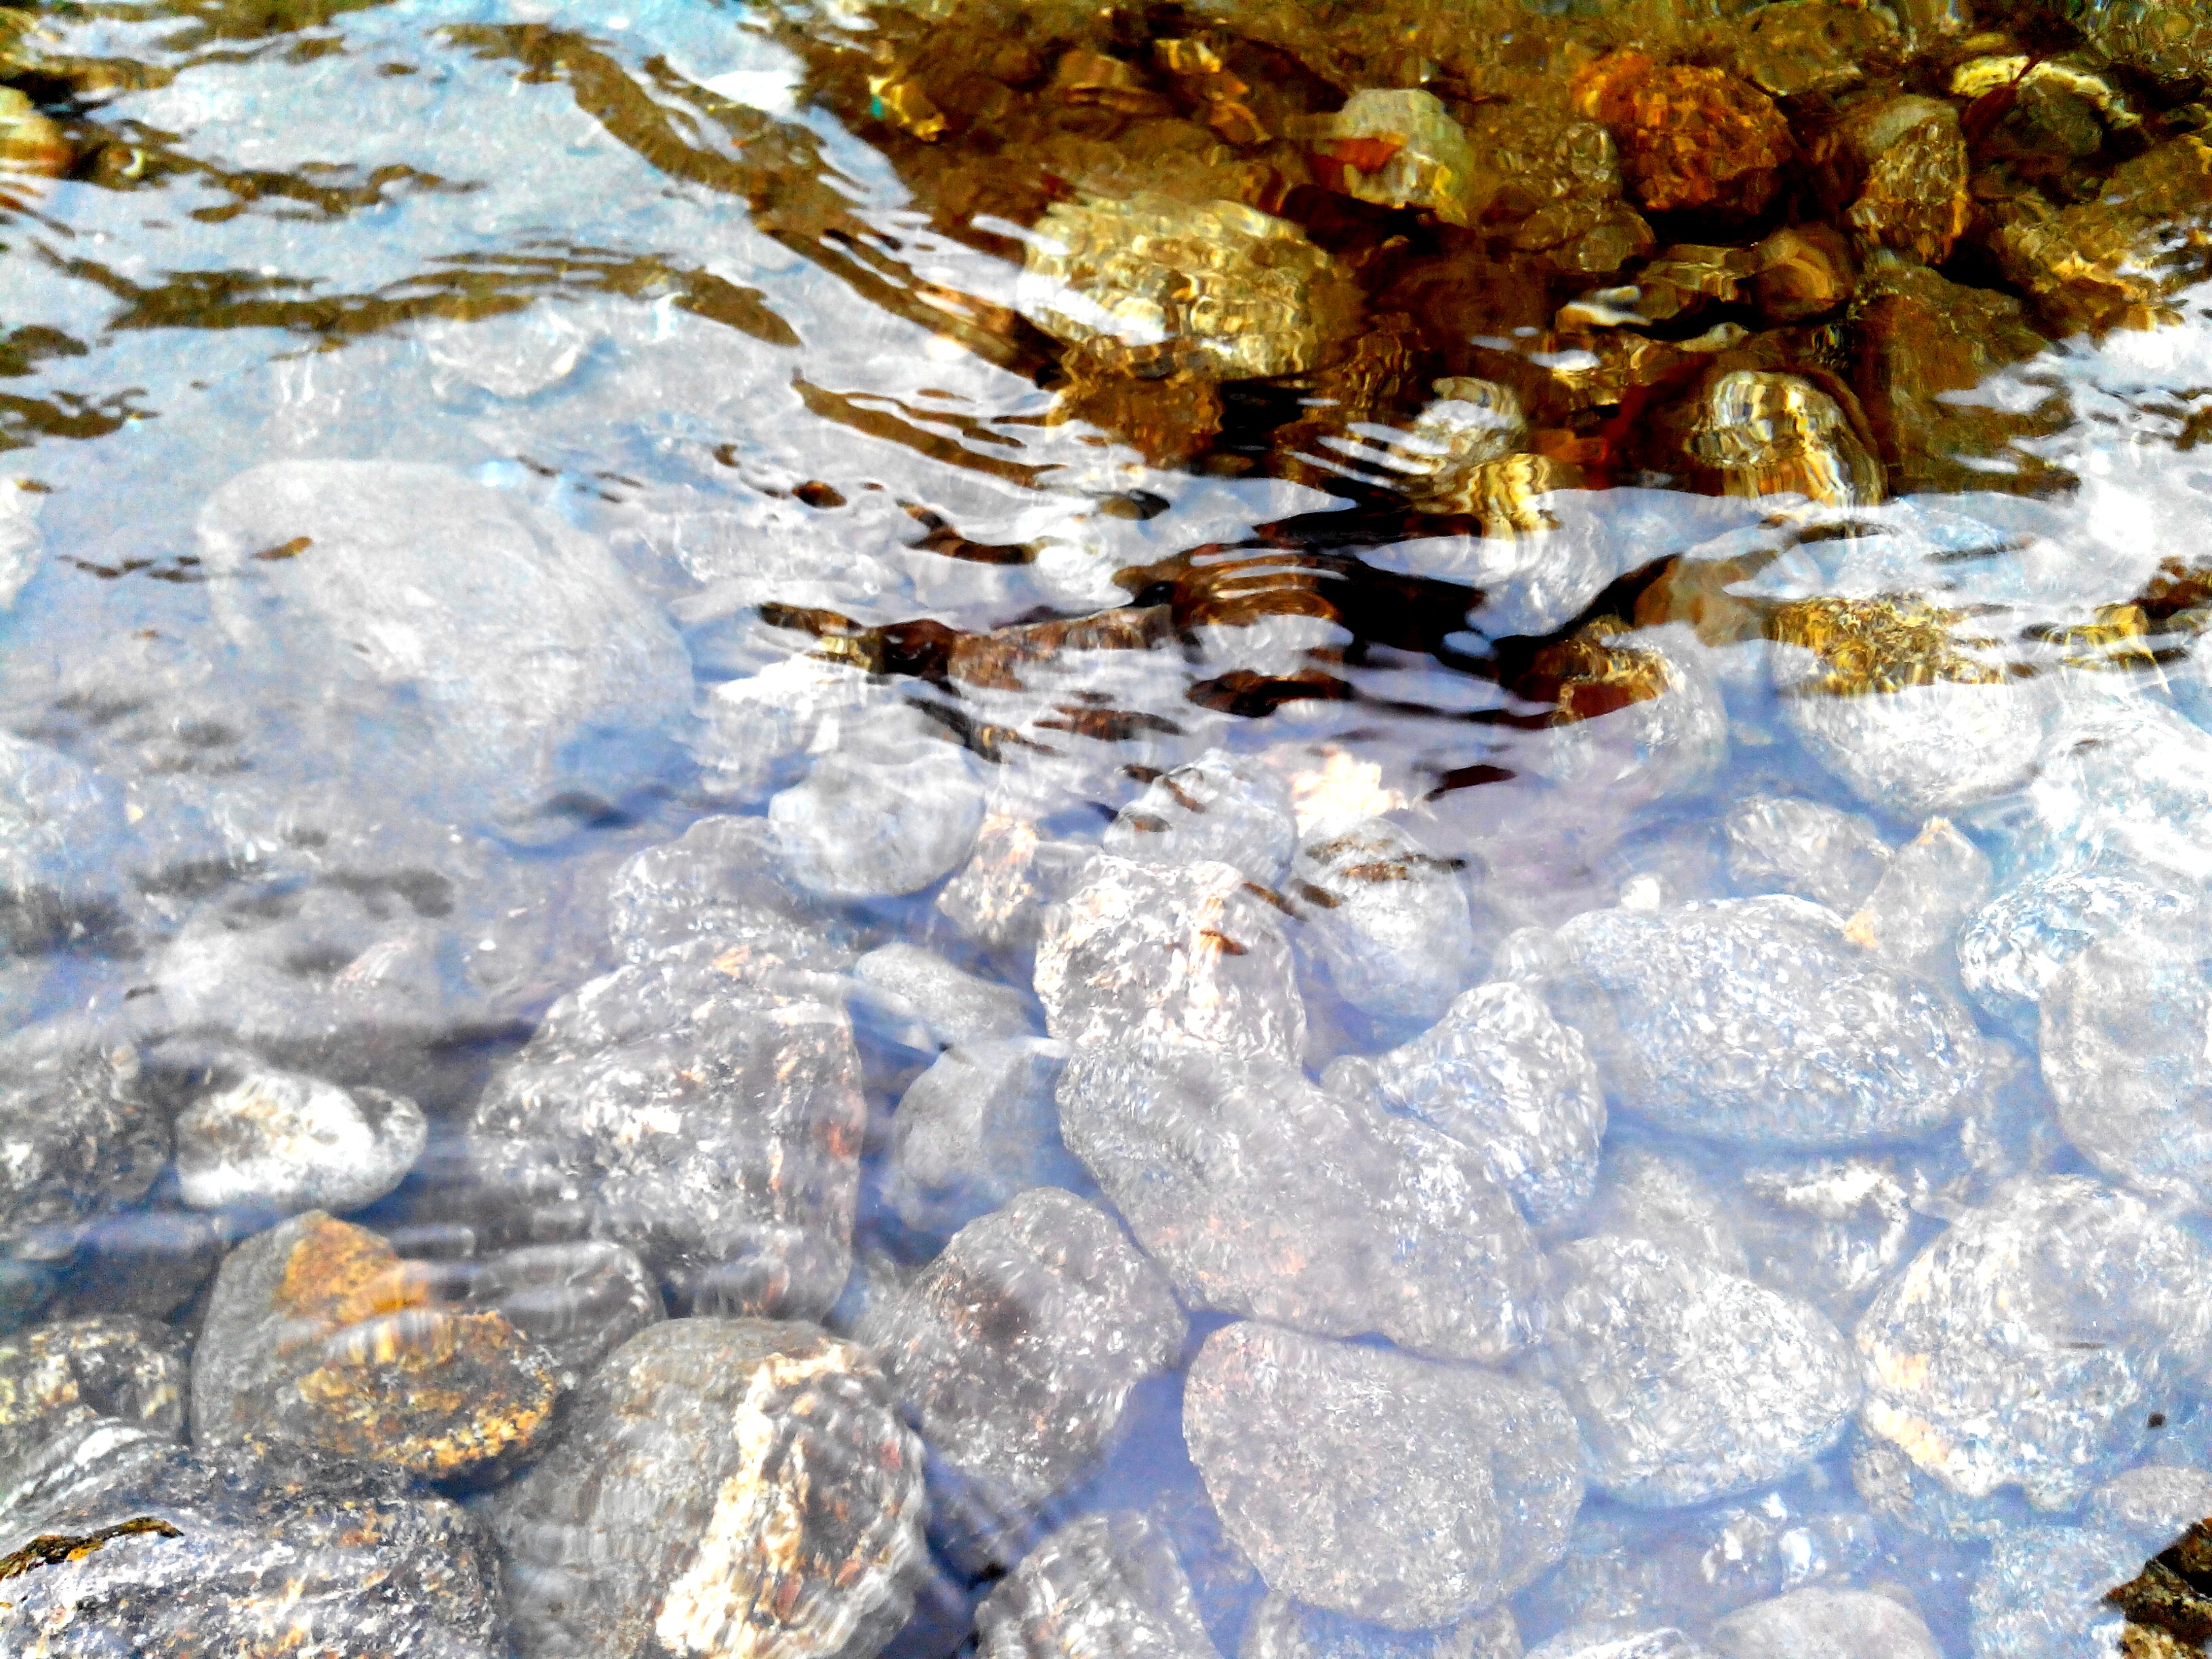 File:River stone in srikhola.JPG - Wikimedia Commons